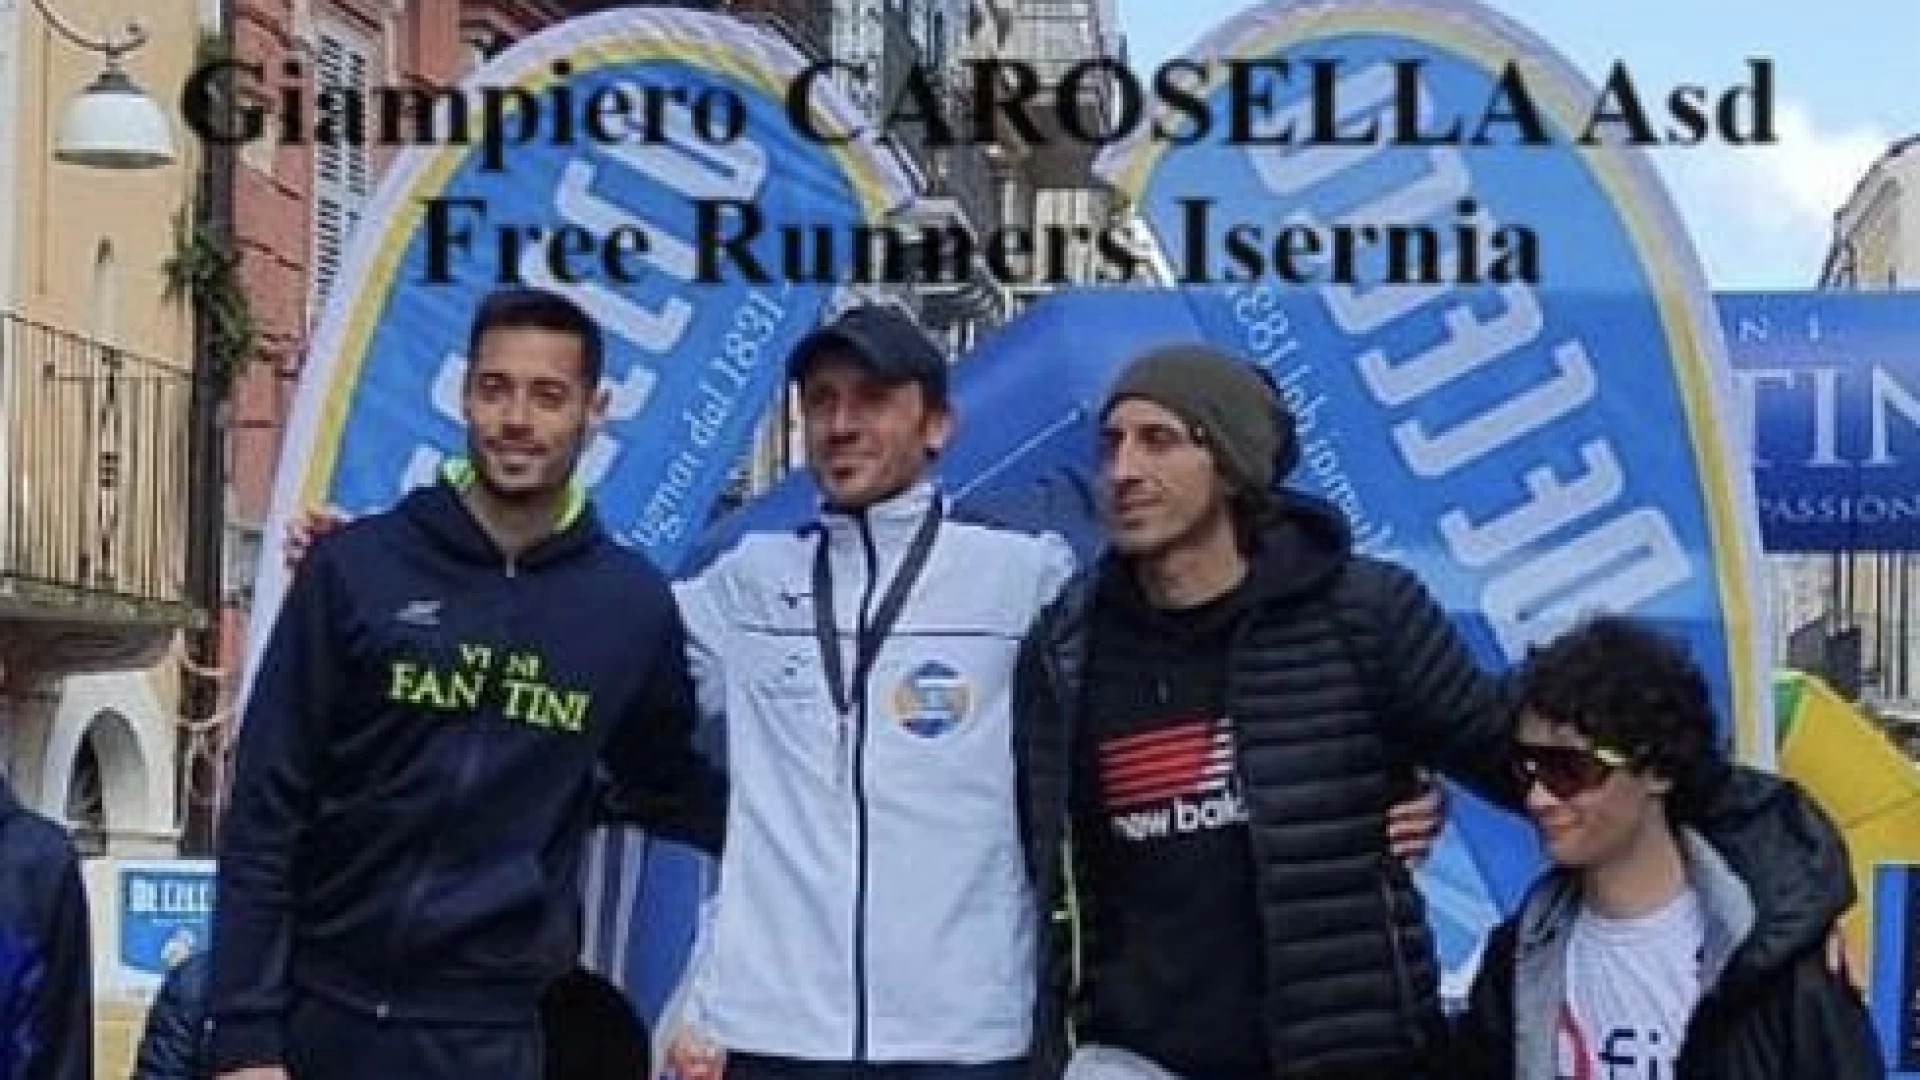 Giampiero Carosella dell'Asd Free Runners Isernia trionfa alla Discovery Run dei trabocchi.